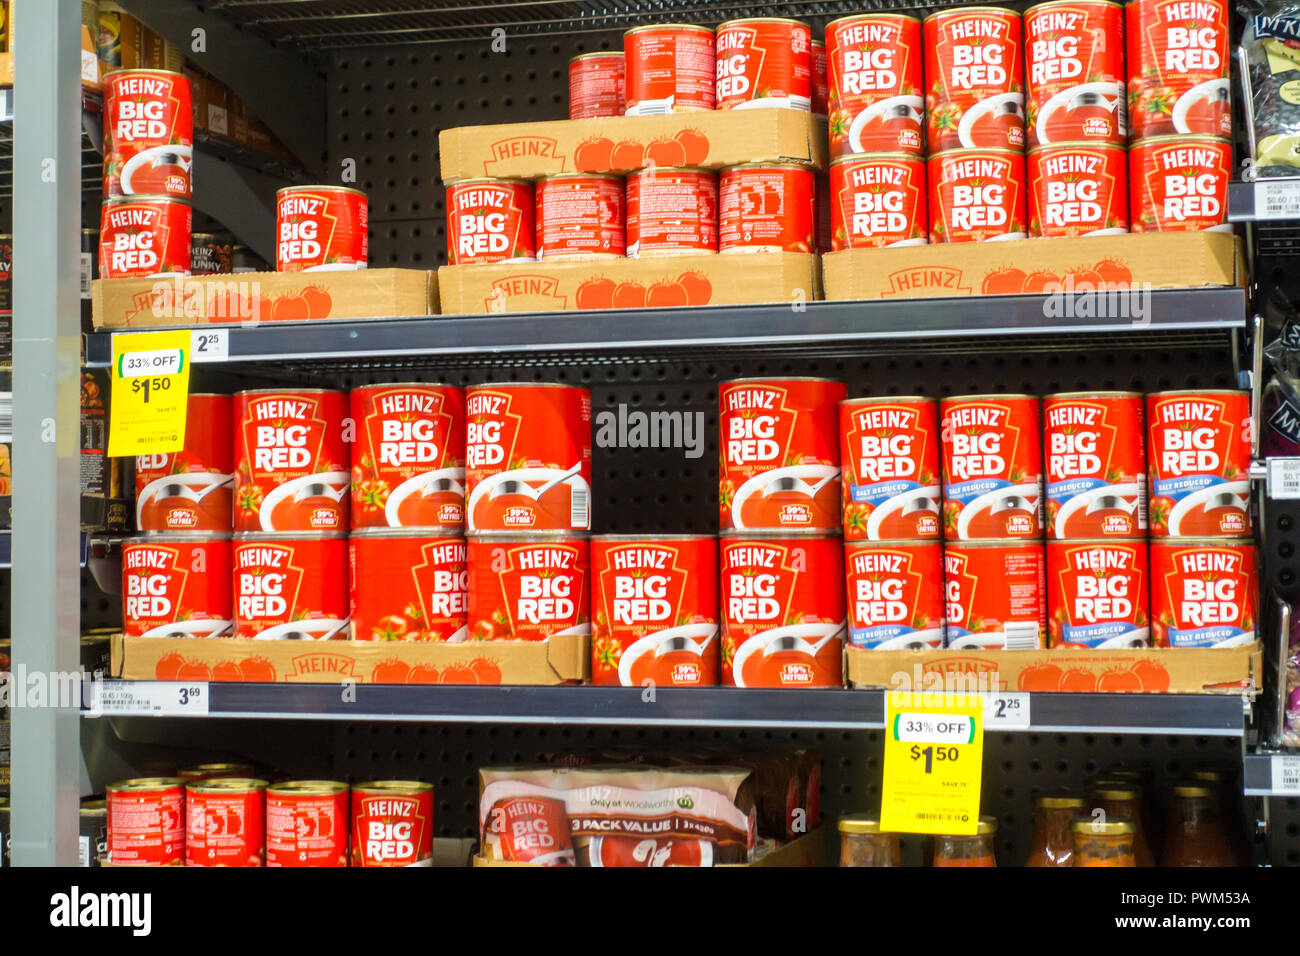 Dosen von Heinz Big Red Tomato Soup auf Woolworths Regale im Supermarkt, Tamworth NSW Australien. Stockfoto